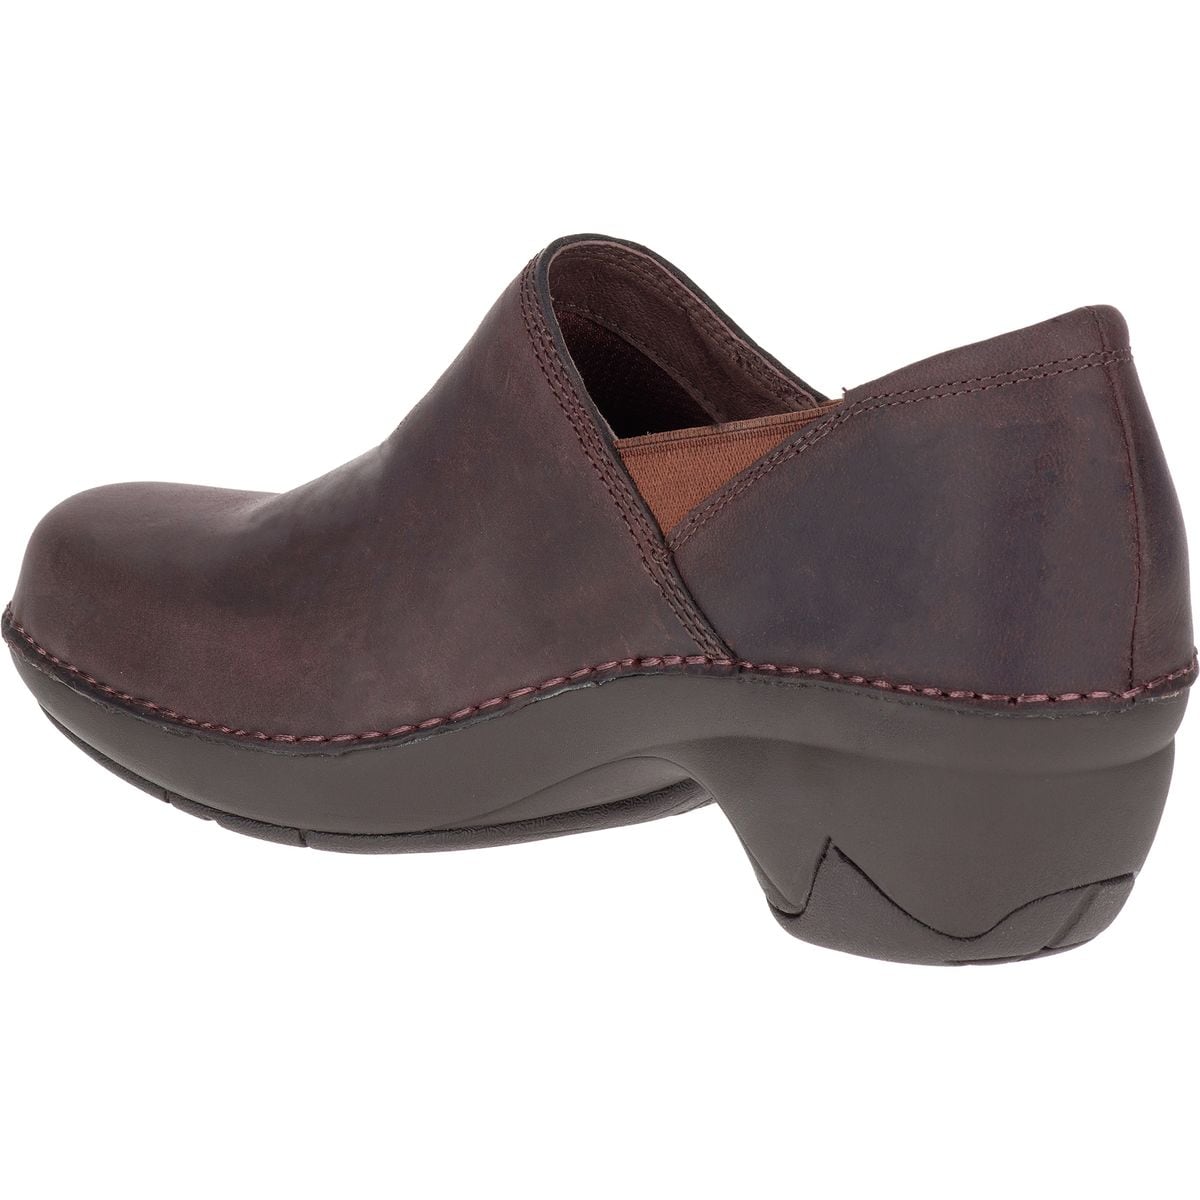 Merrell Emma Leather Shoe - Women's - Footwear